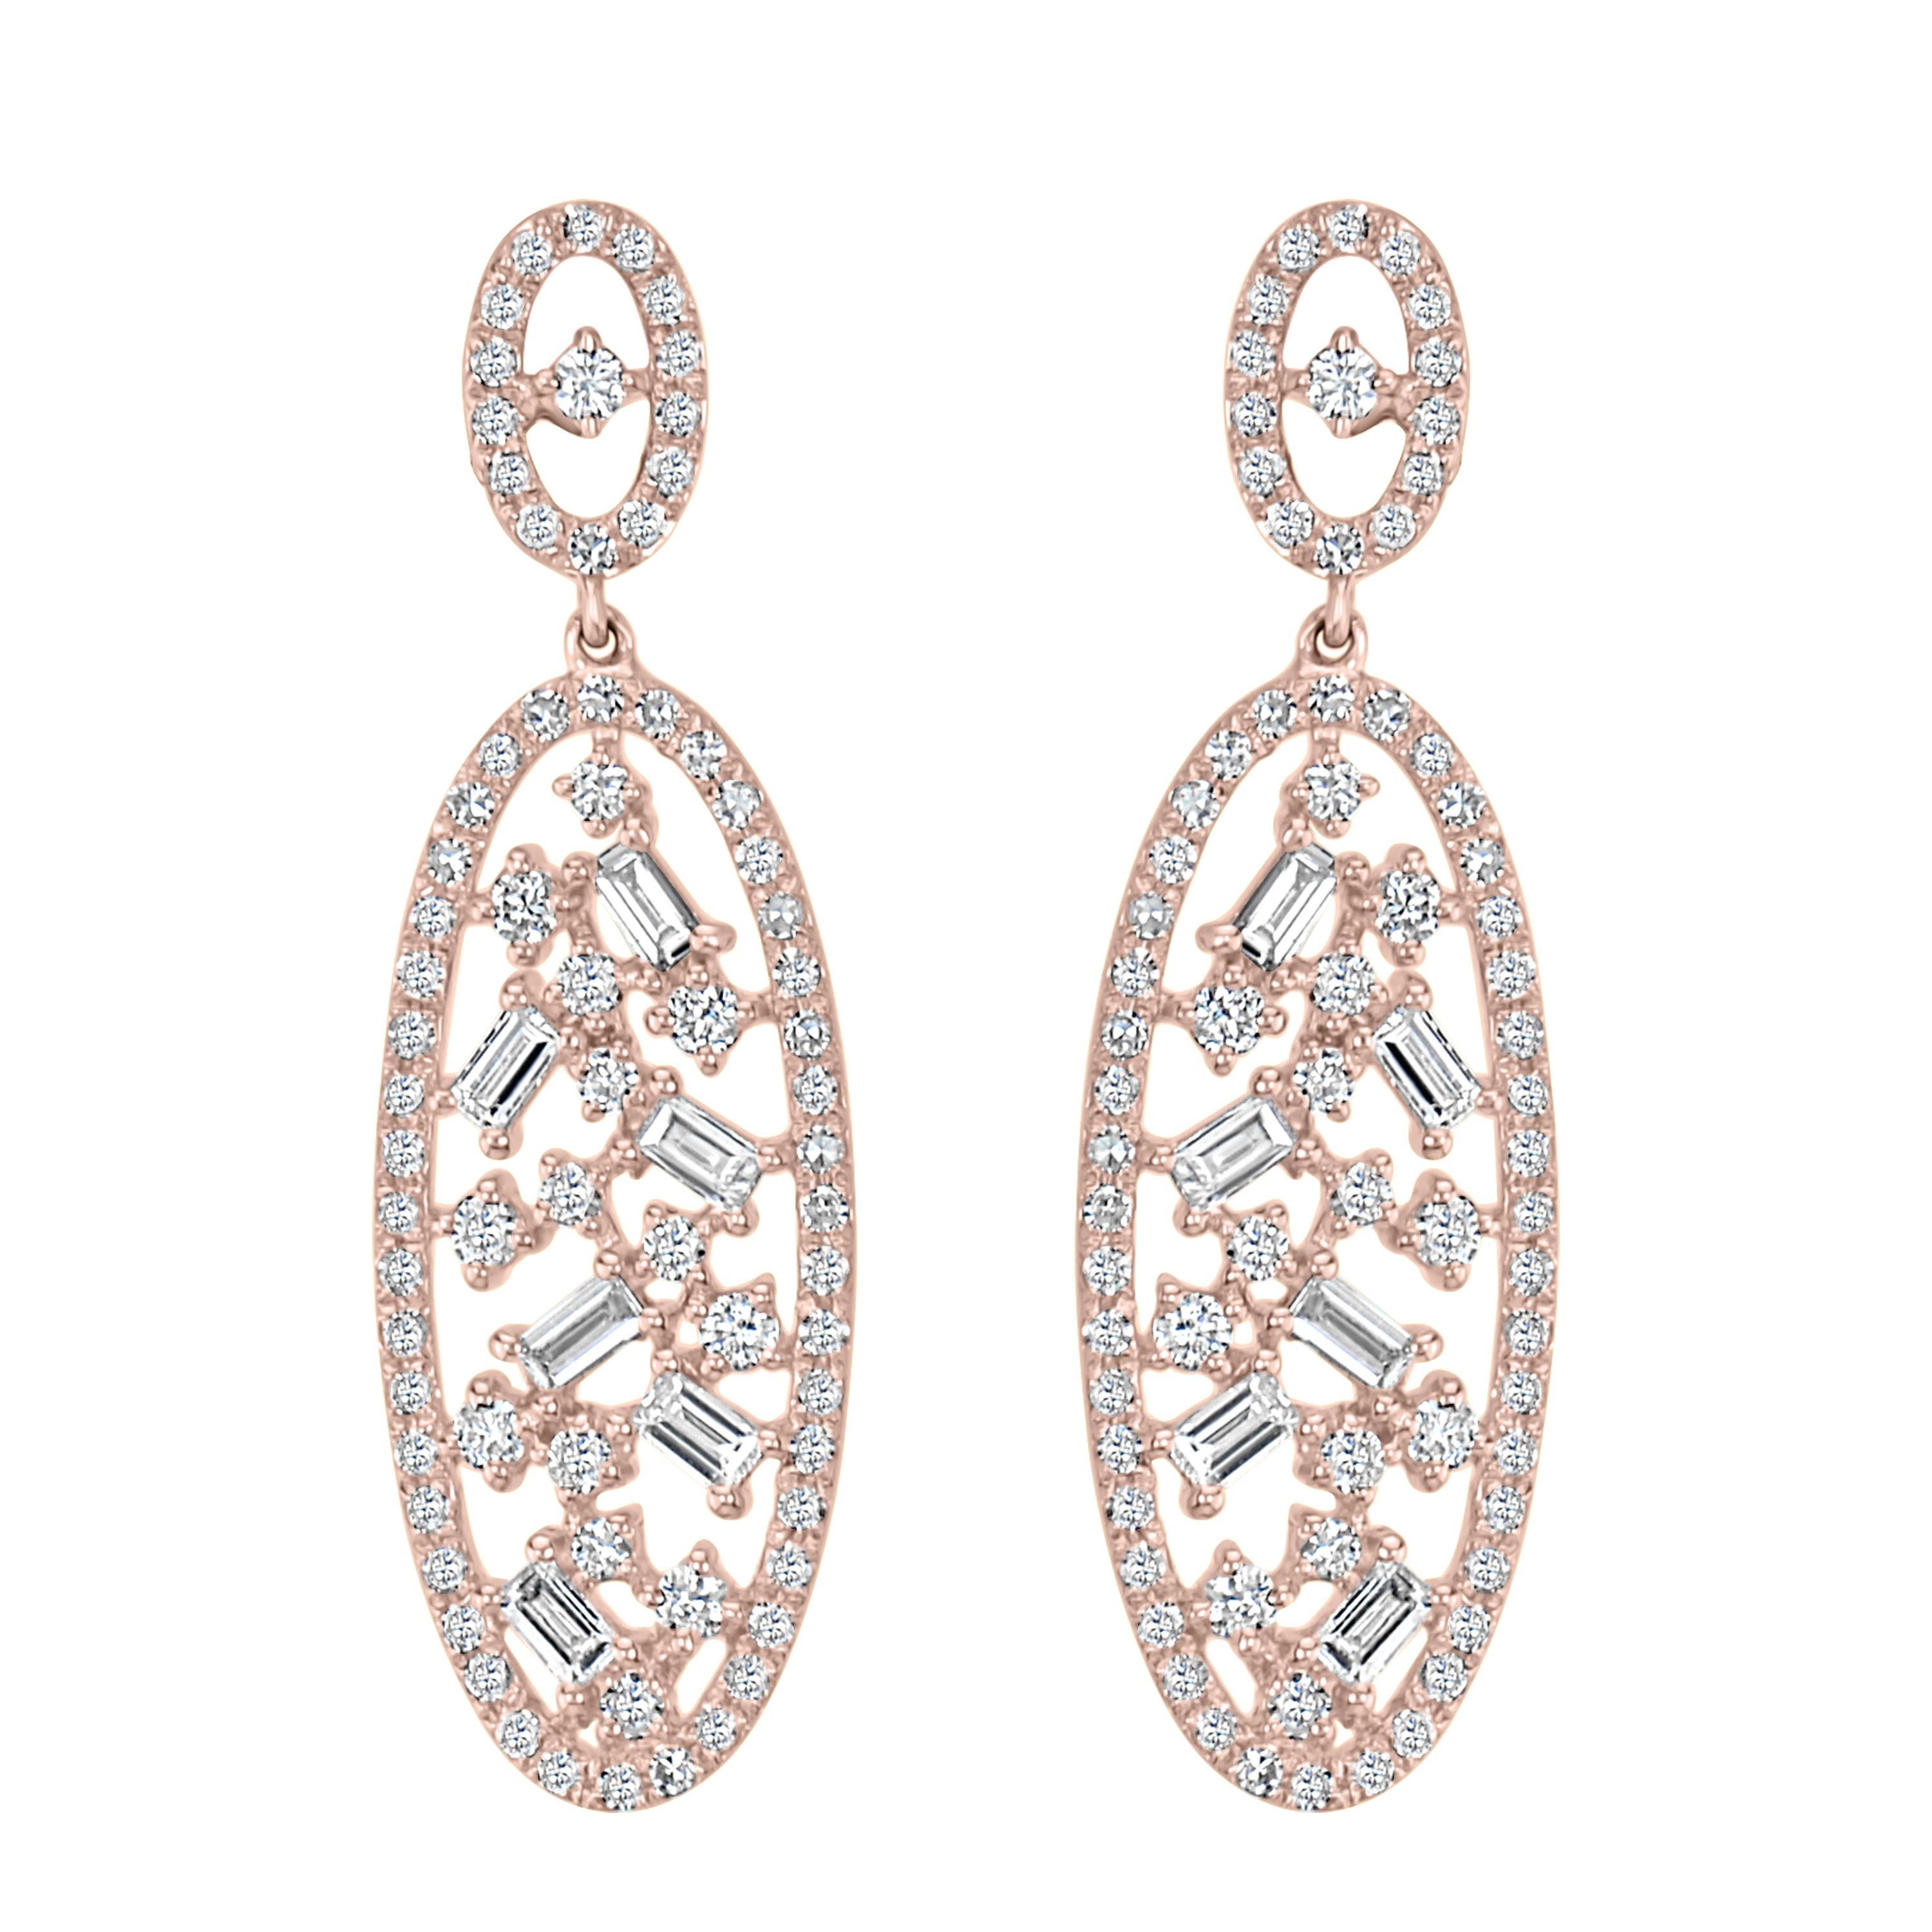 Ces boucles d'oreilles ovales Luxle sont ornées de 12 diamants baguettes et de 142 petits et grands diamants ronds. Ces boucles d'oreilles sont dotées d'une tige en or et d'une boucle d'embrayage.

Suivez la vitrine de Luxury Jewels pour découvrir